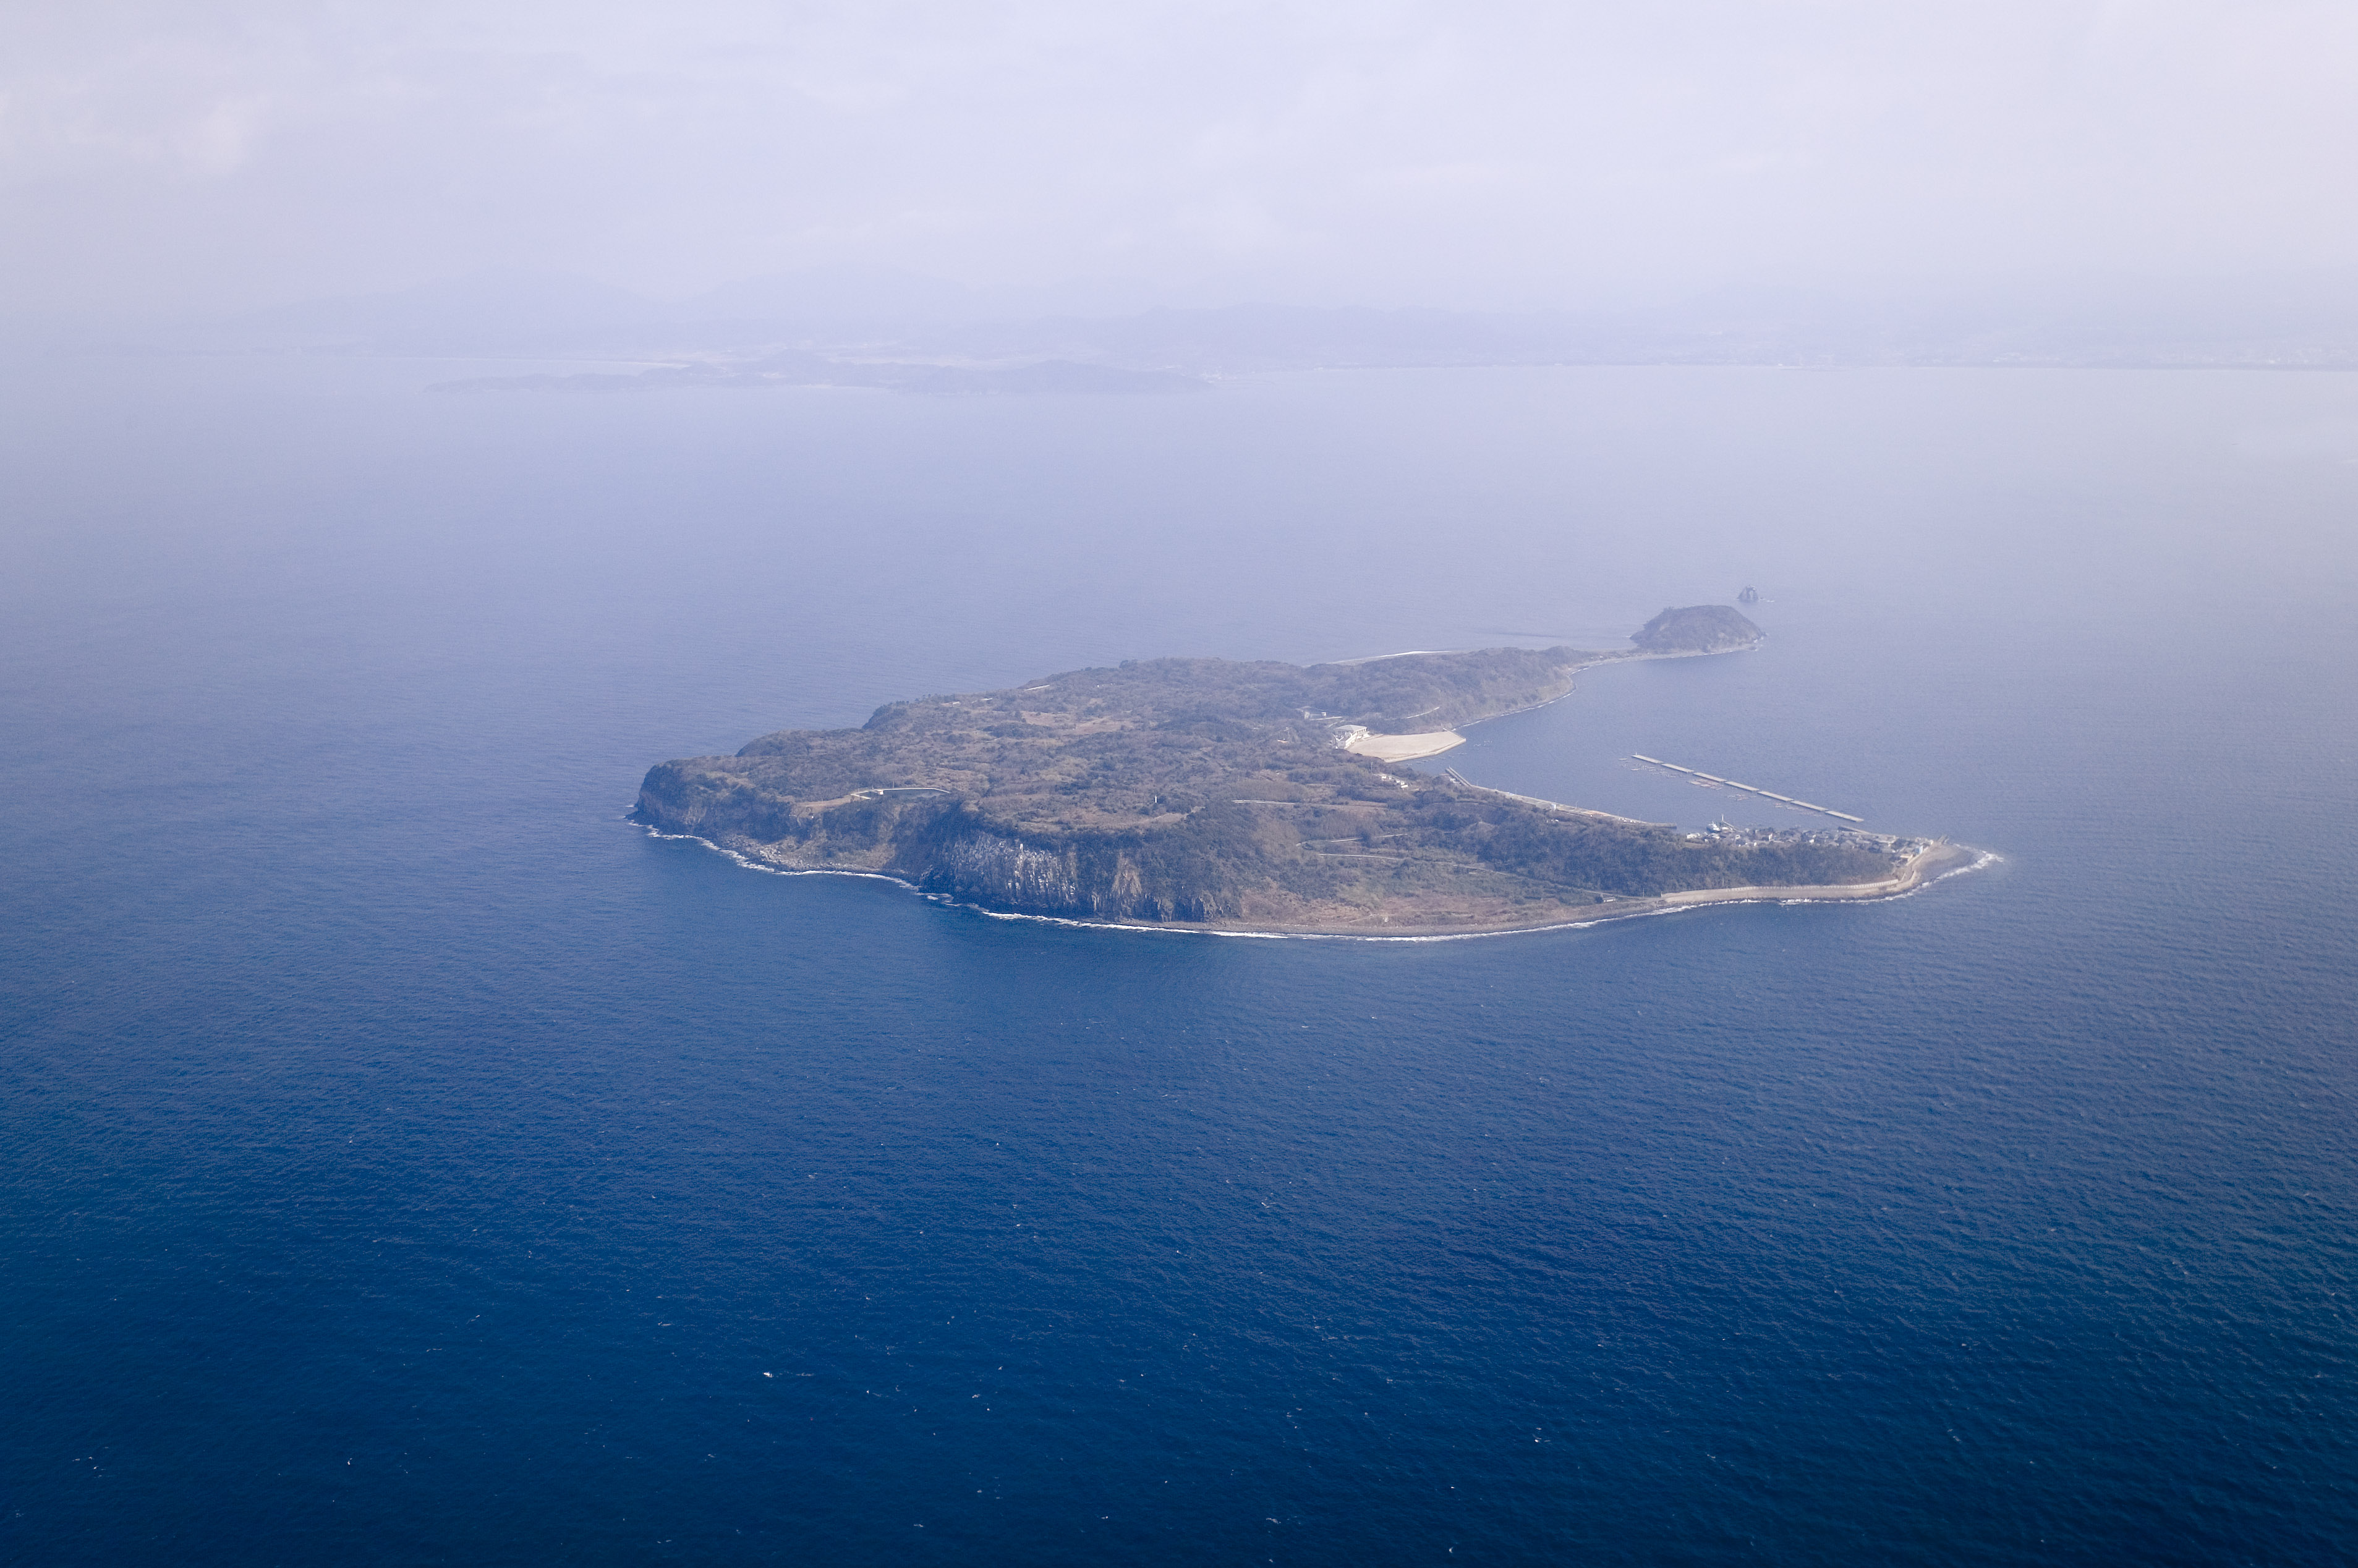 photo,material,free,landscape,picture,stock photo,Creative Commons,Ainoshima, solitary island, cliff, precipice, The sea